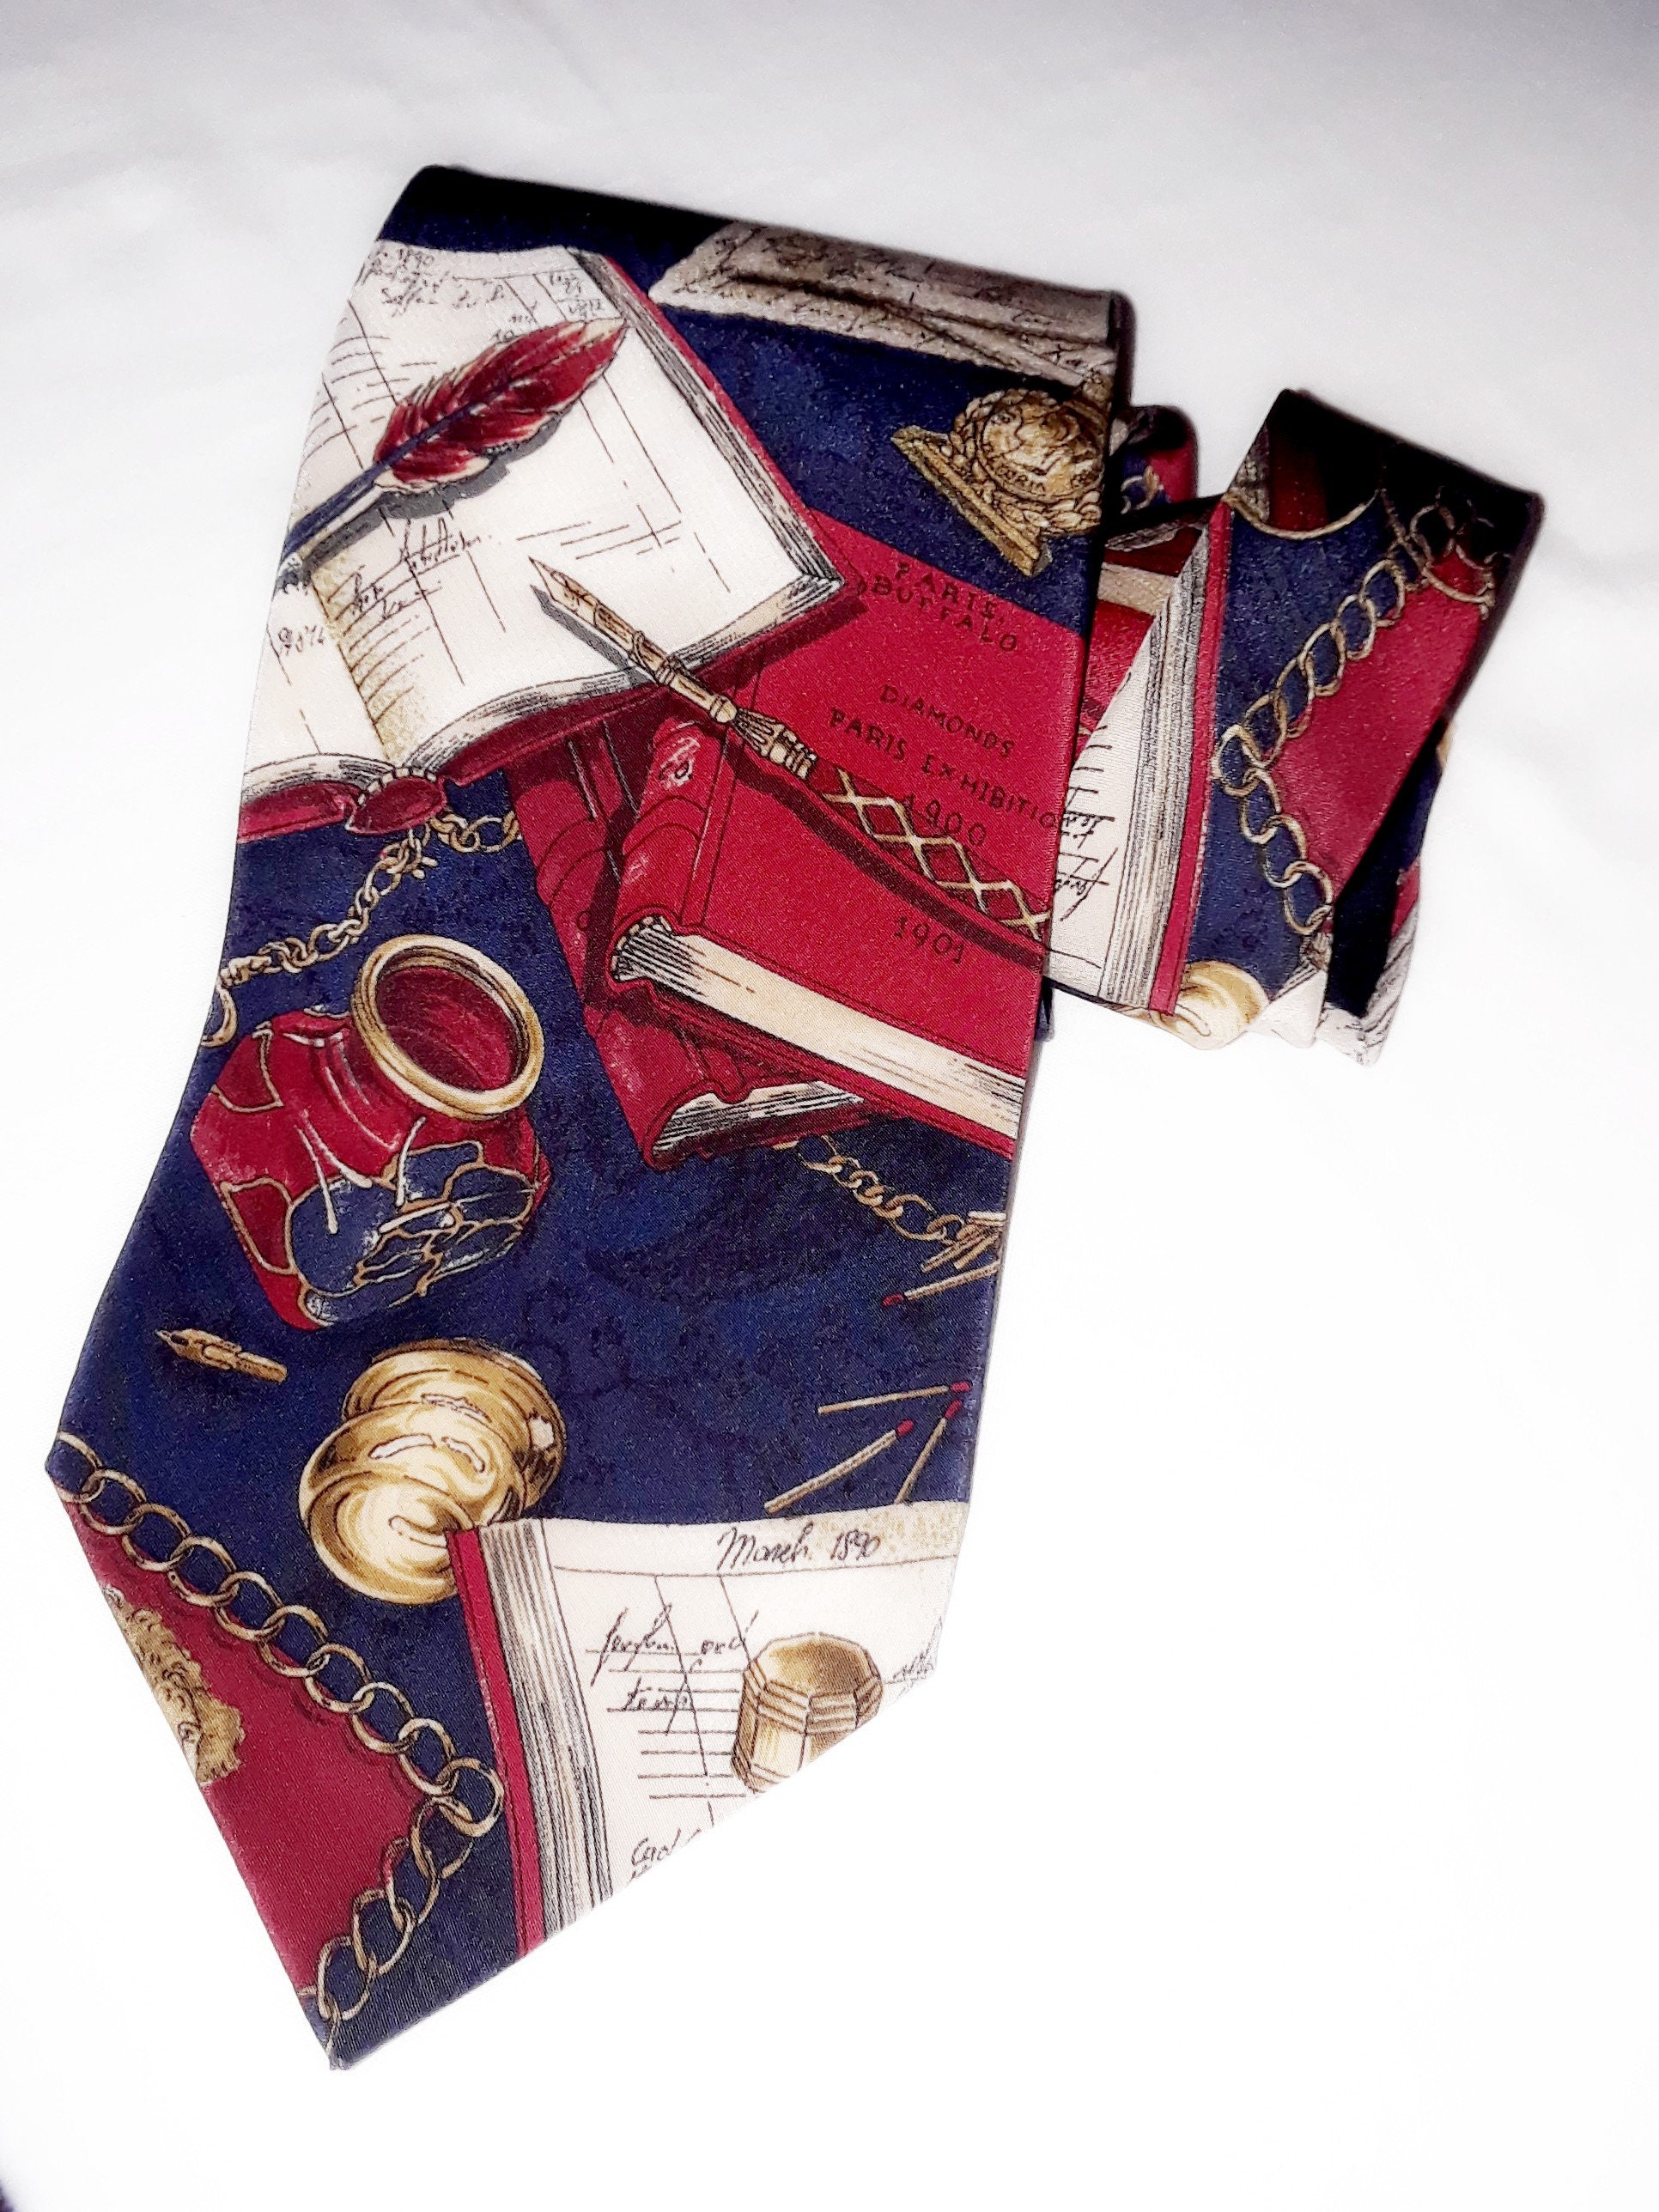 Louis Vuitton, Accessories, Louis Vuitton Red Silk Neck Tie